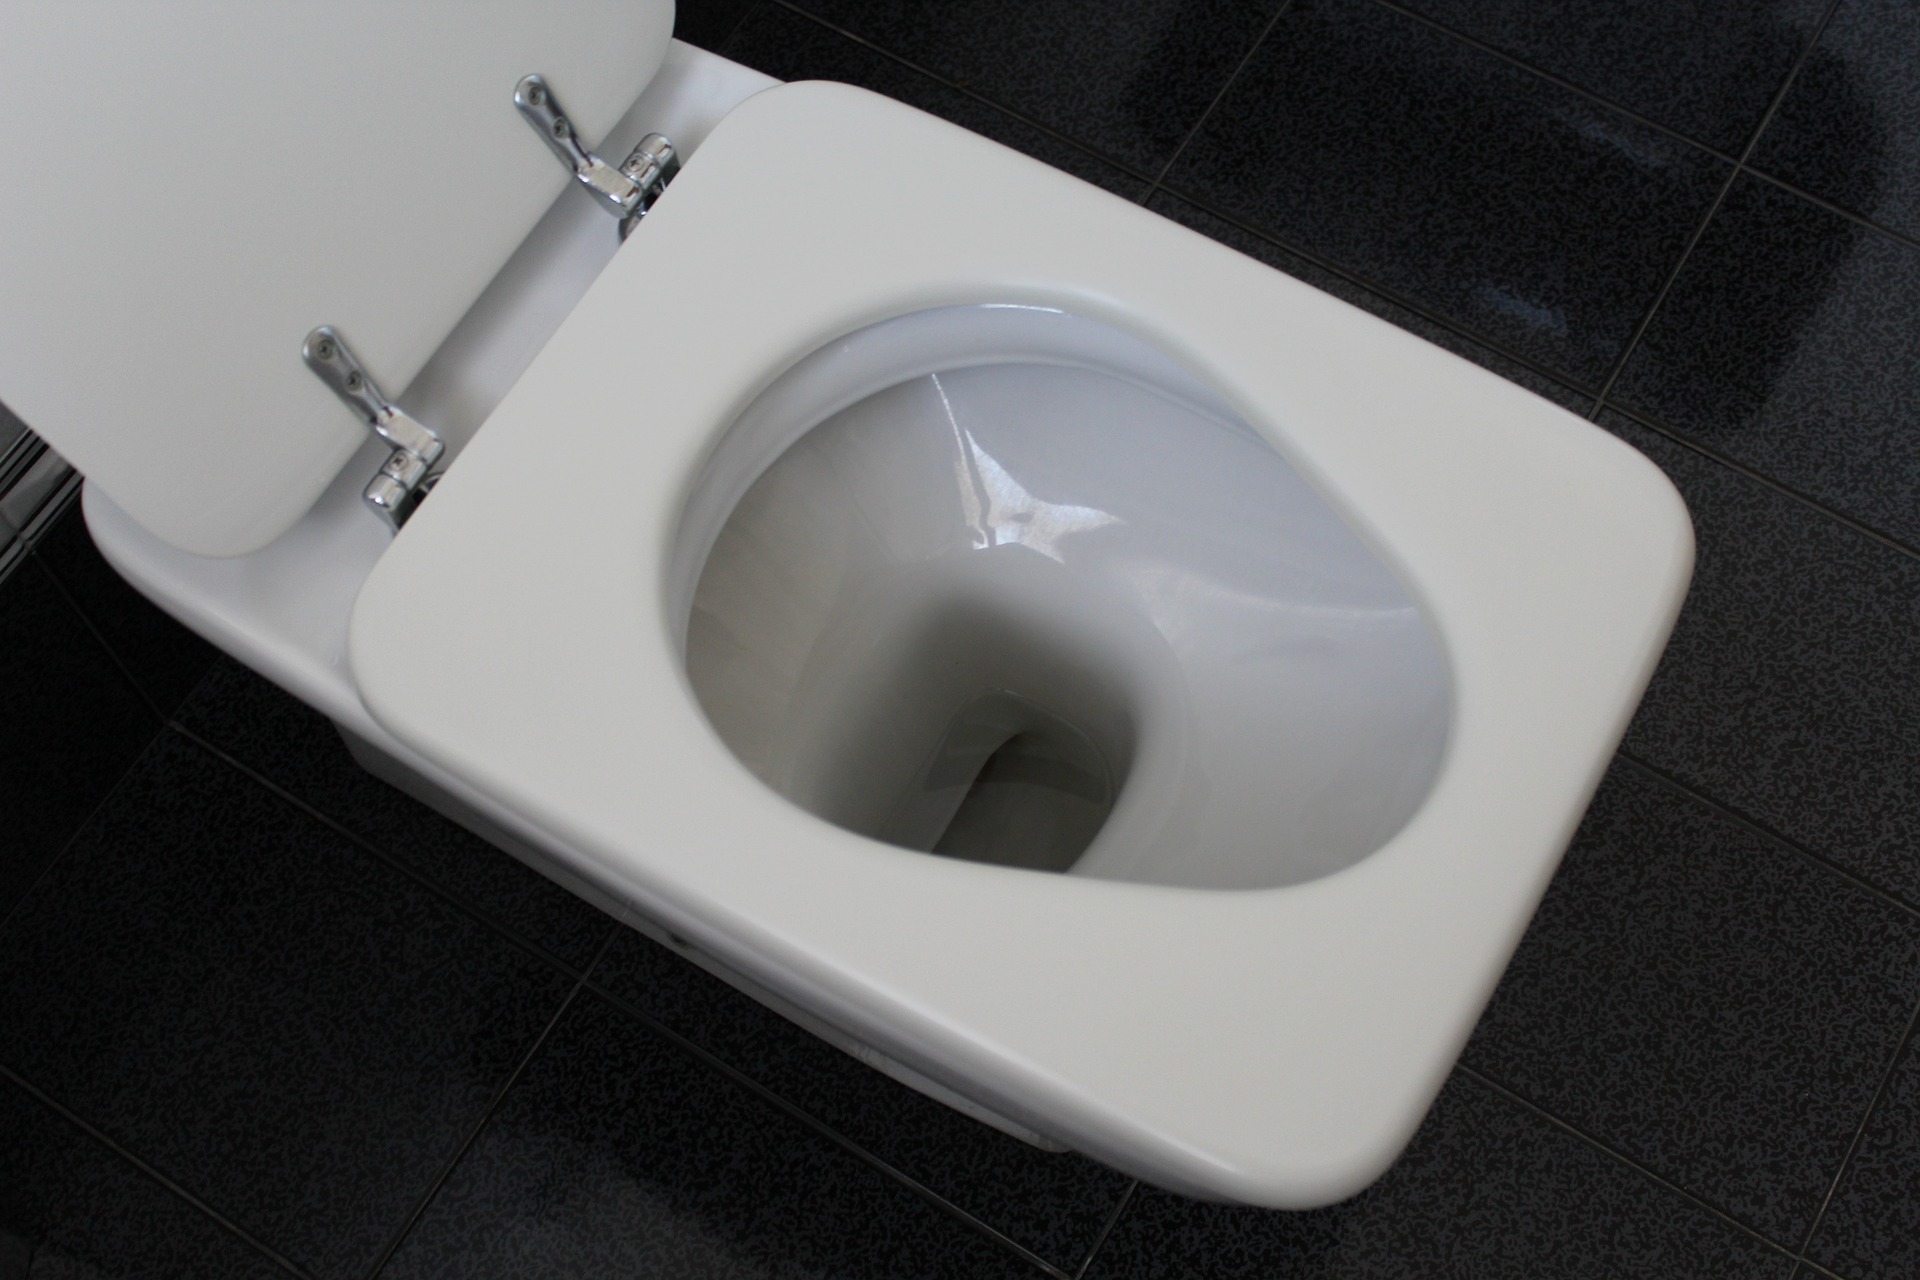 Wlej do toalety i odczekaj 15 minut: domowy trik, który KAŻDY powinien znać!